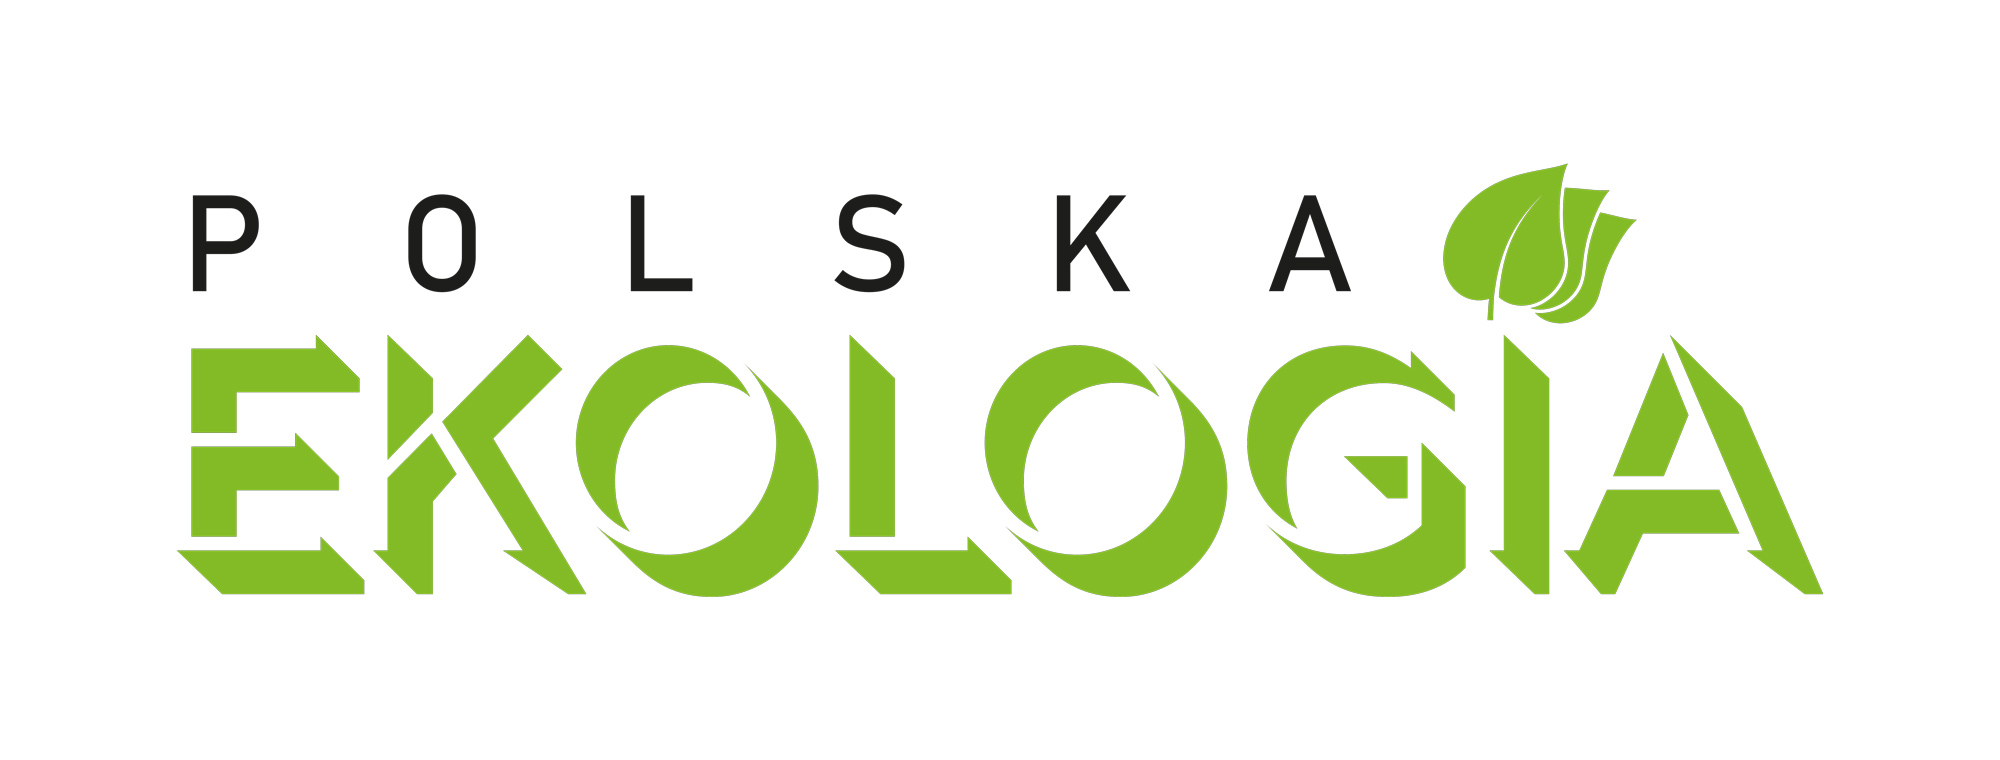 Polskaekologia Logo Na Bialy V02